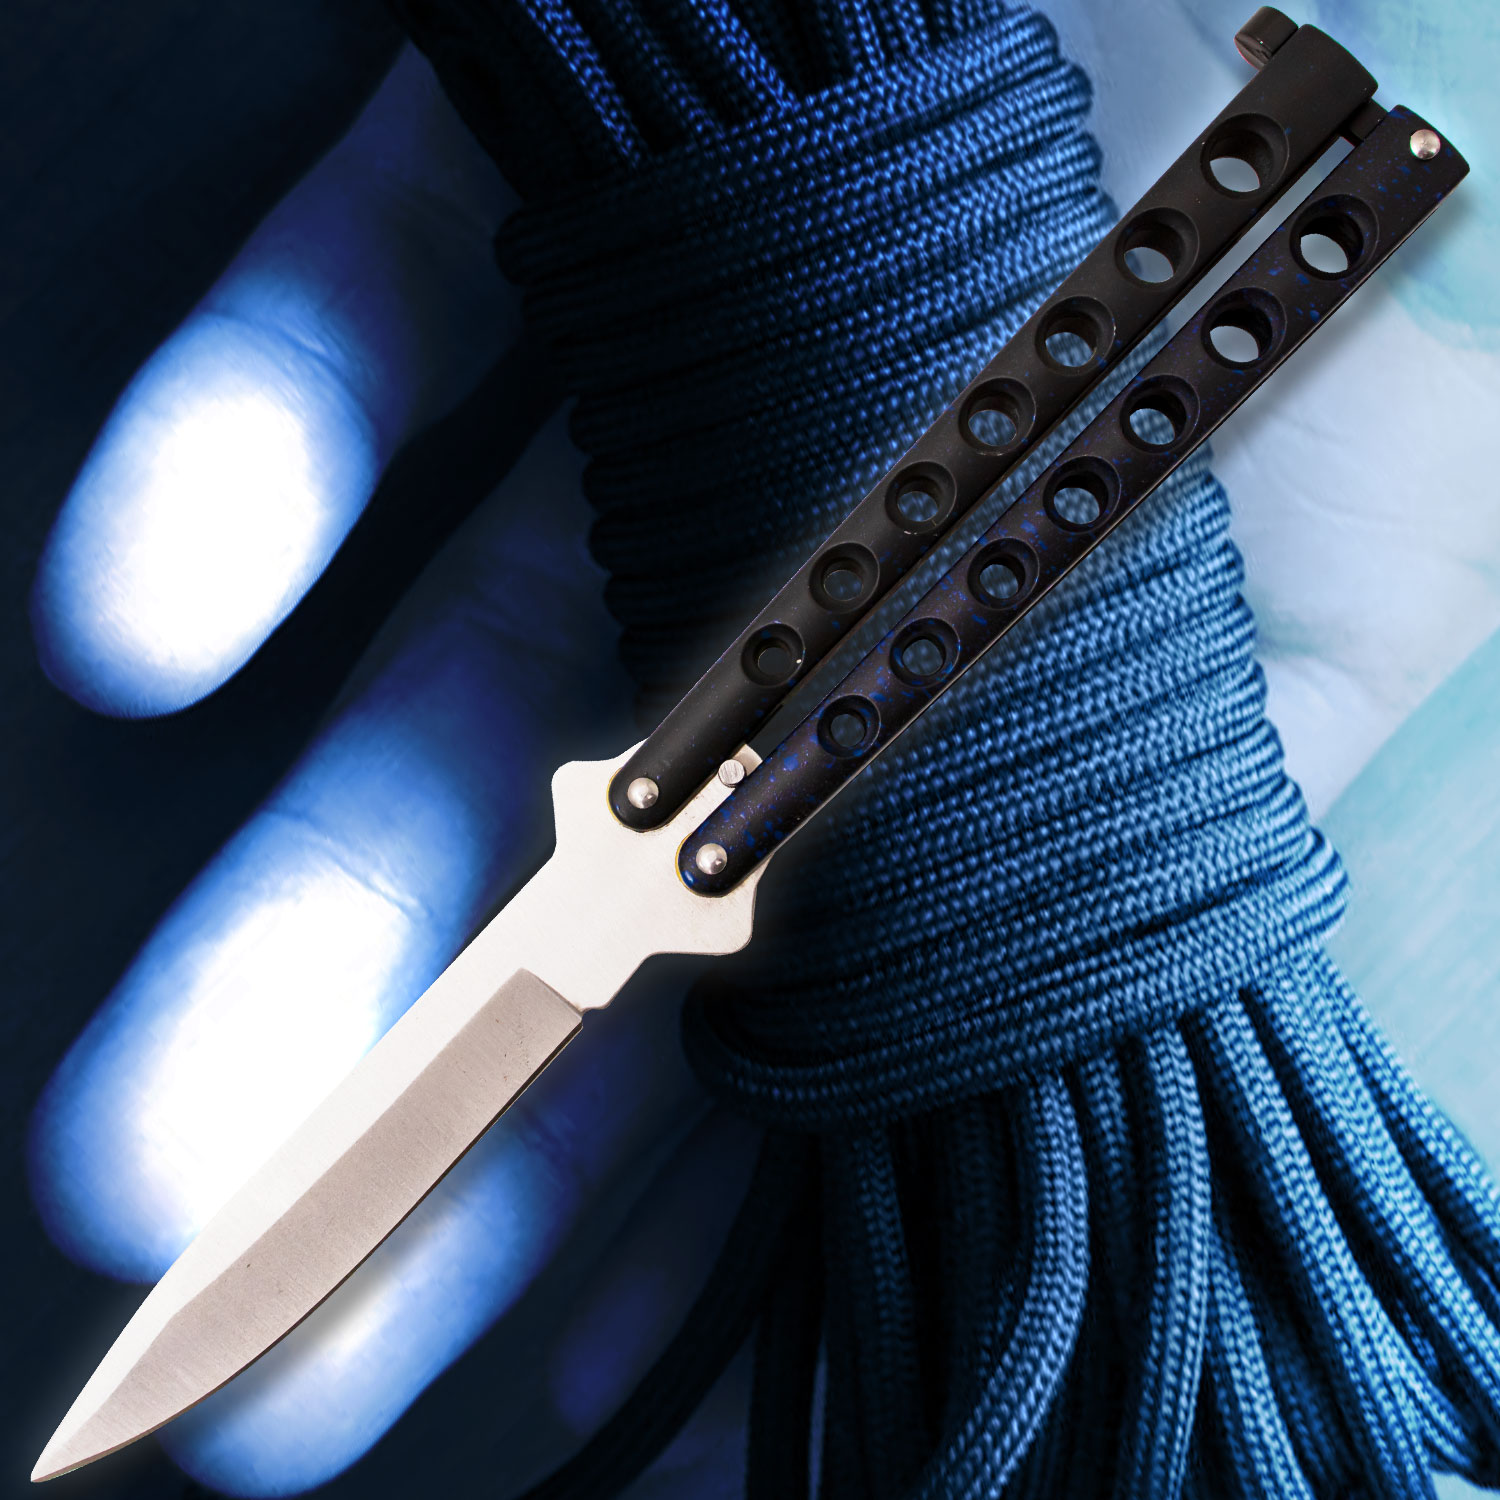 Blue Speed Demon Butterfly Knife - Stainless Steel Blade, Skeletonized Steel HandleQA